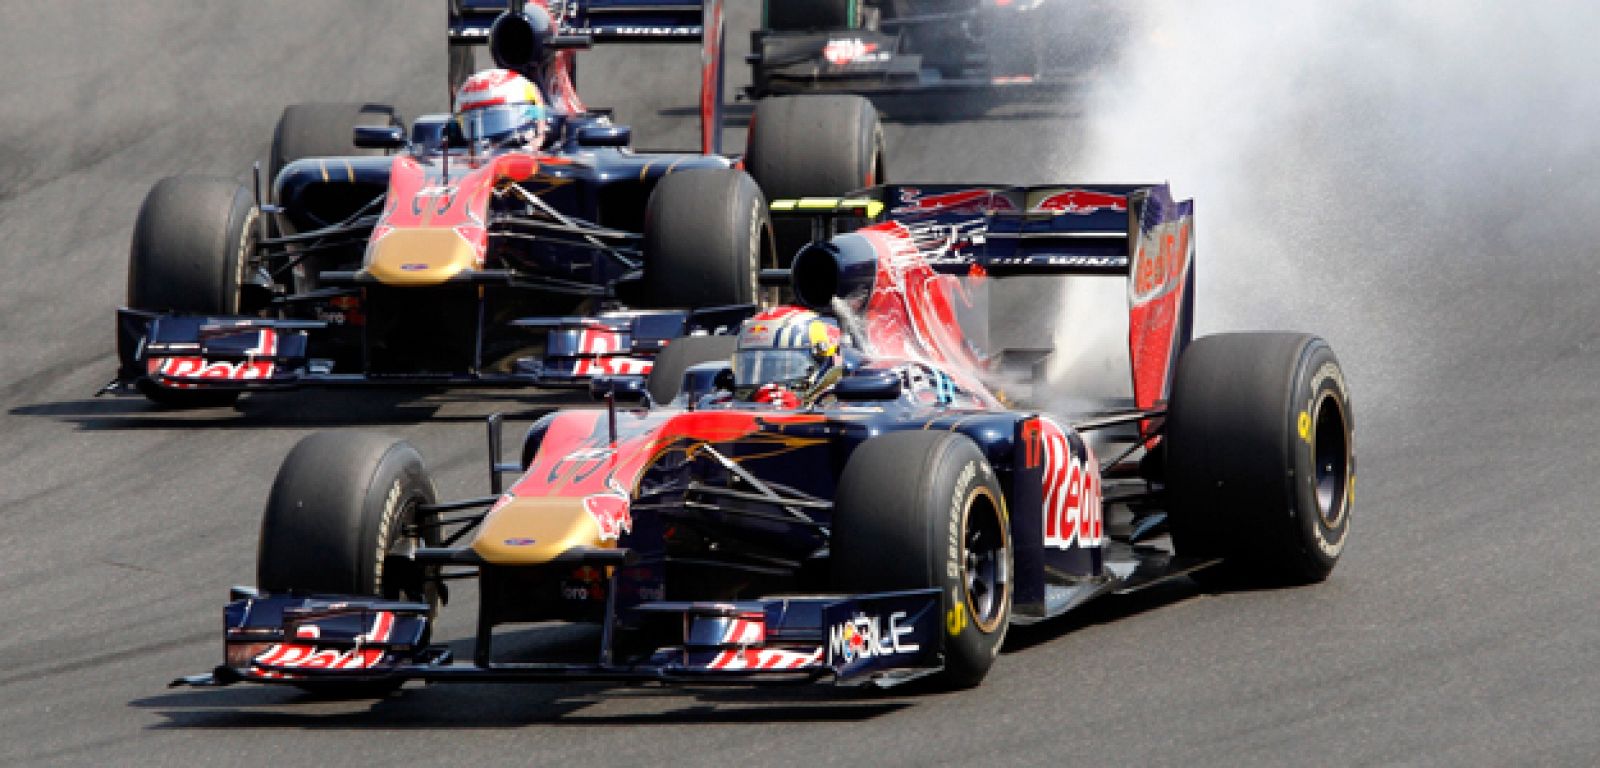 El pilto de Toro Rosso se ha quedado tirado en la pista en la segunda vuelta.